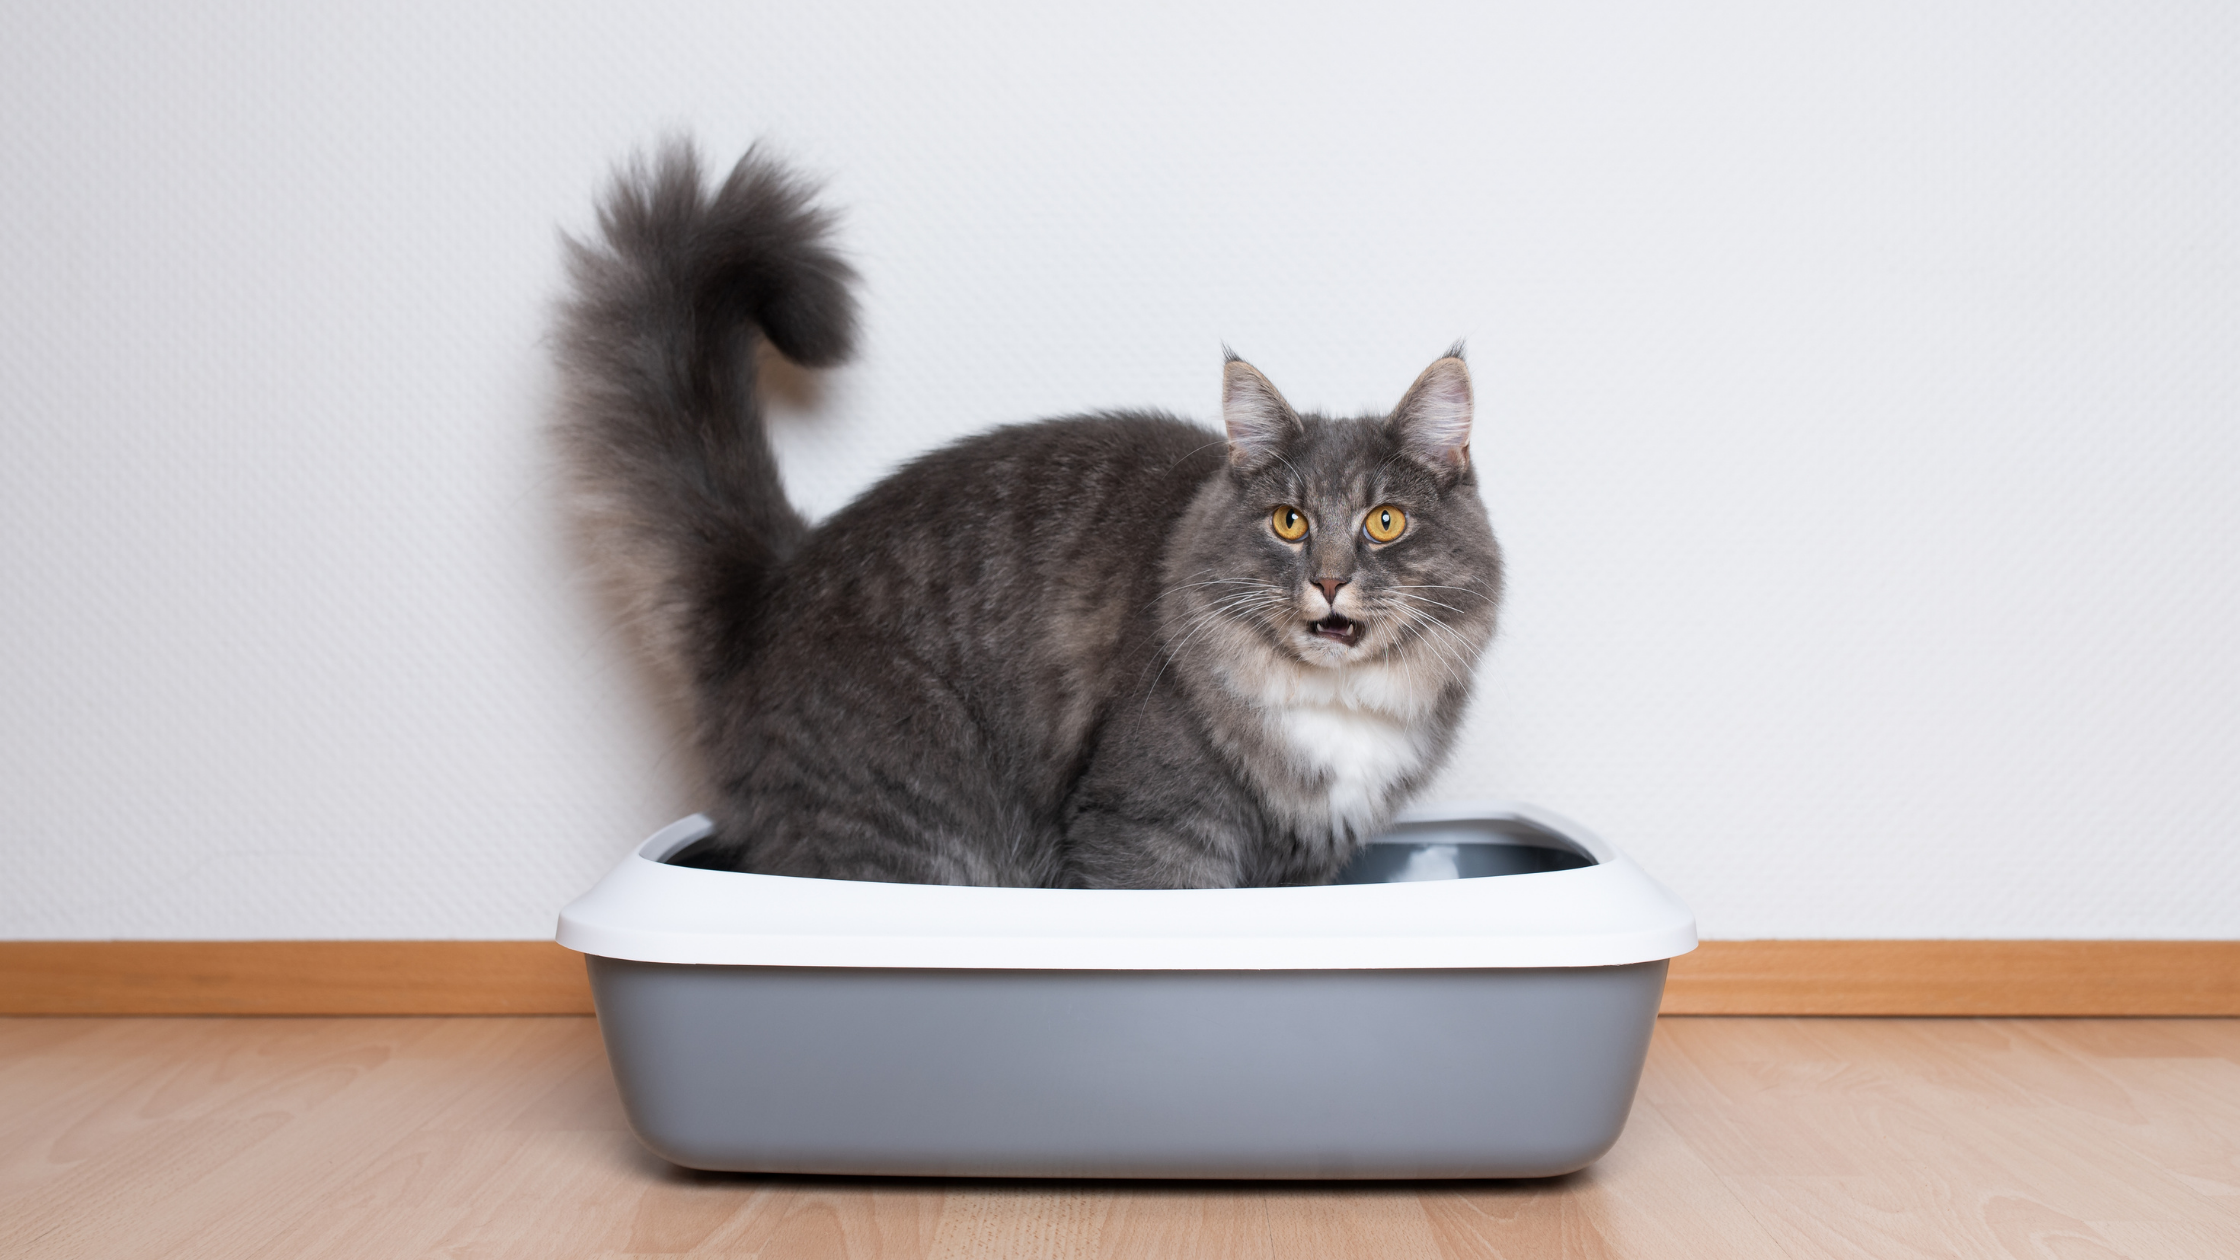 a tabby cat standing inside a grey litter box